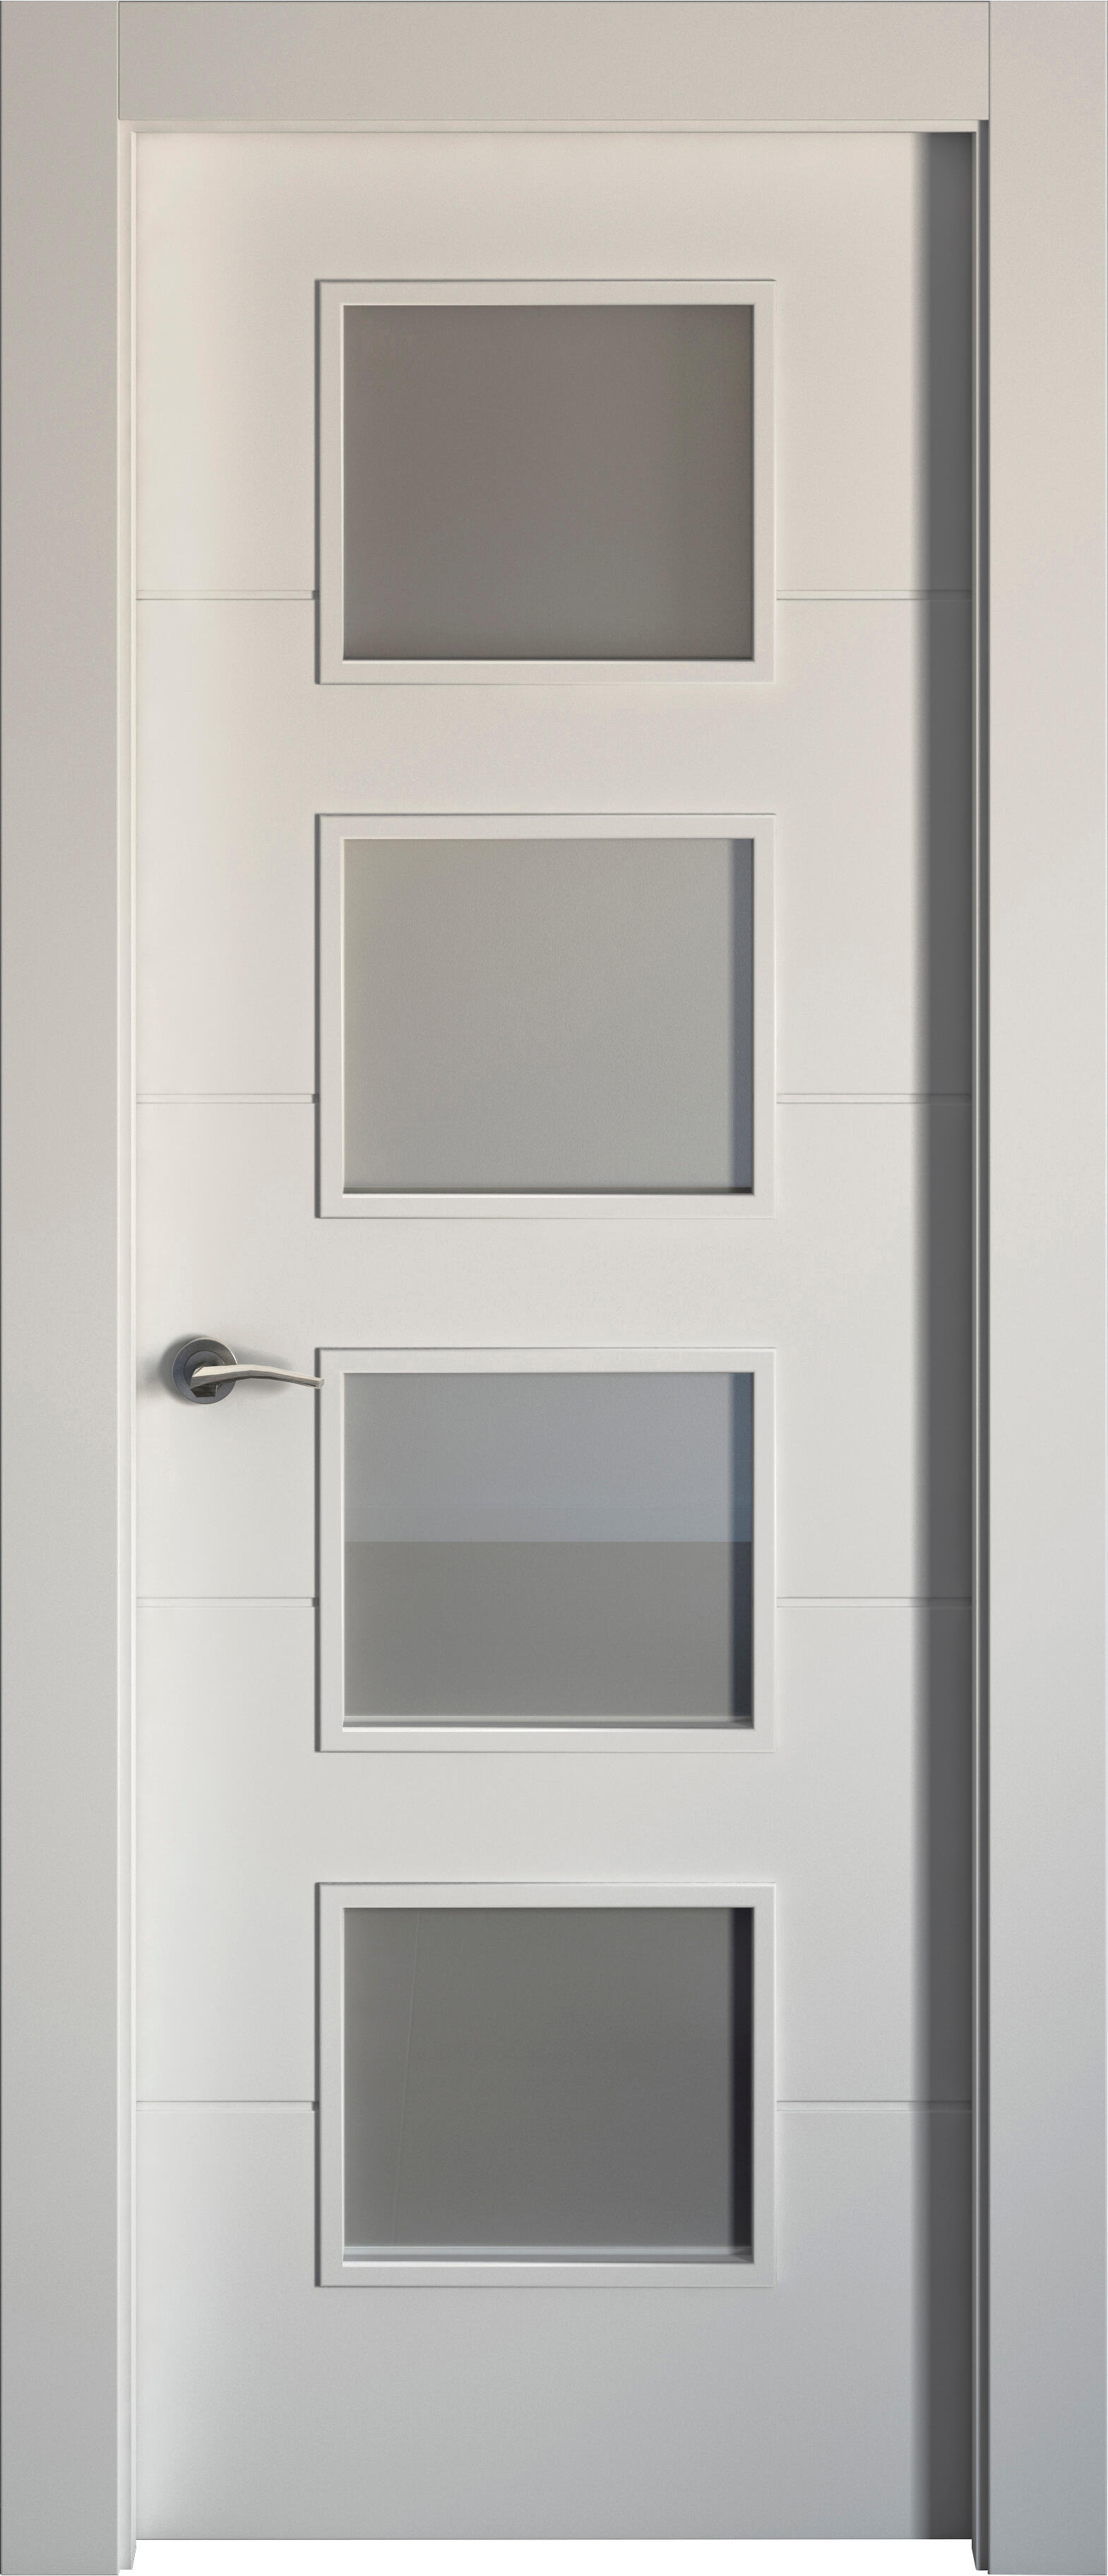 Puerta holanda blanco apertura derecha con cristal 72.5cm